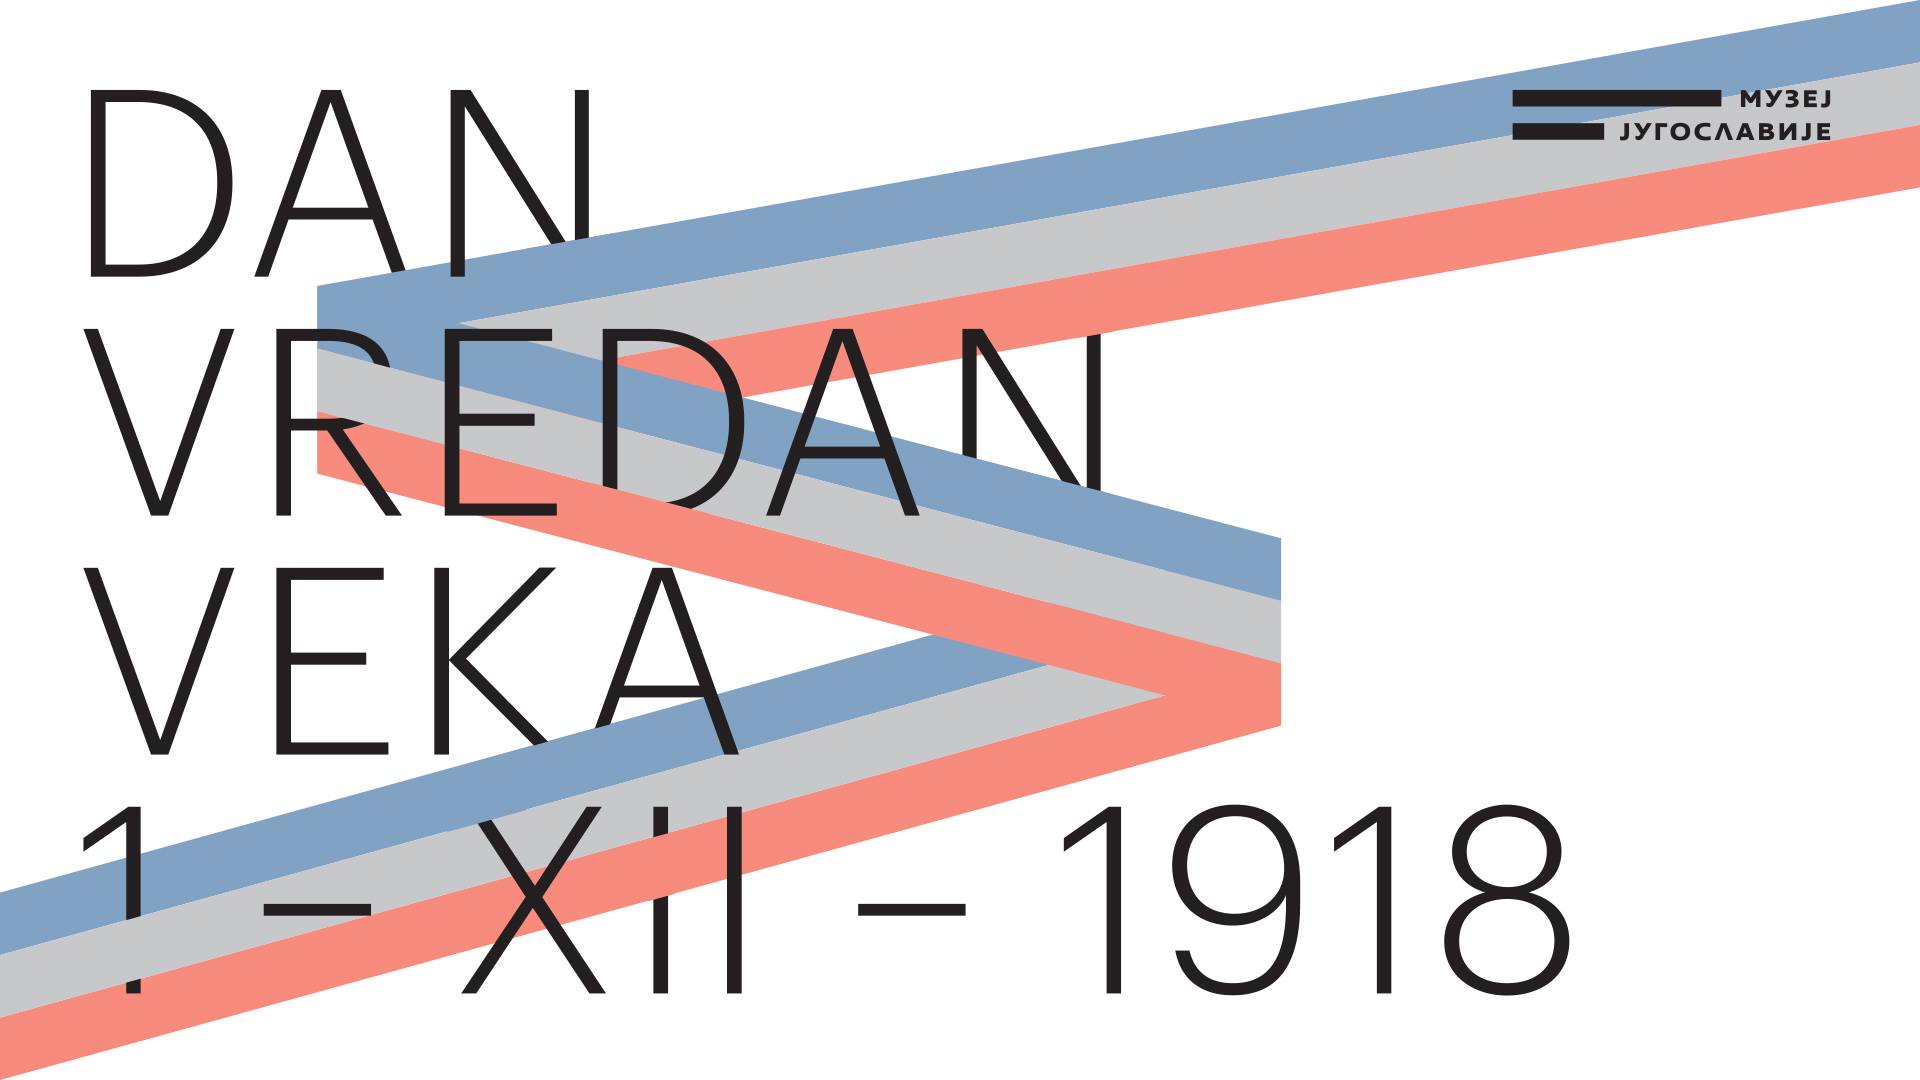 Dan vredan veka 01.12.2018 – 28.04.2019. Muzej Jugoslavije – Palata Srbije